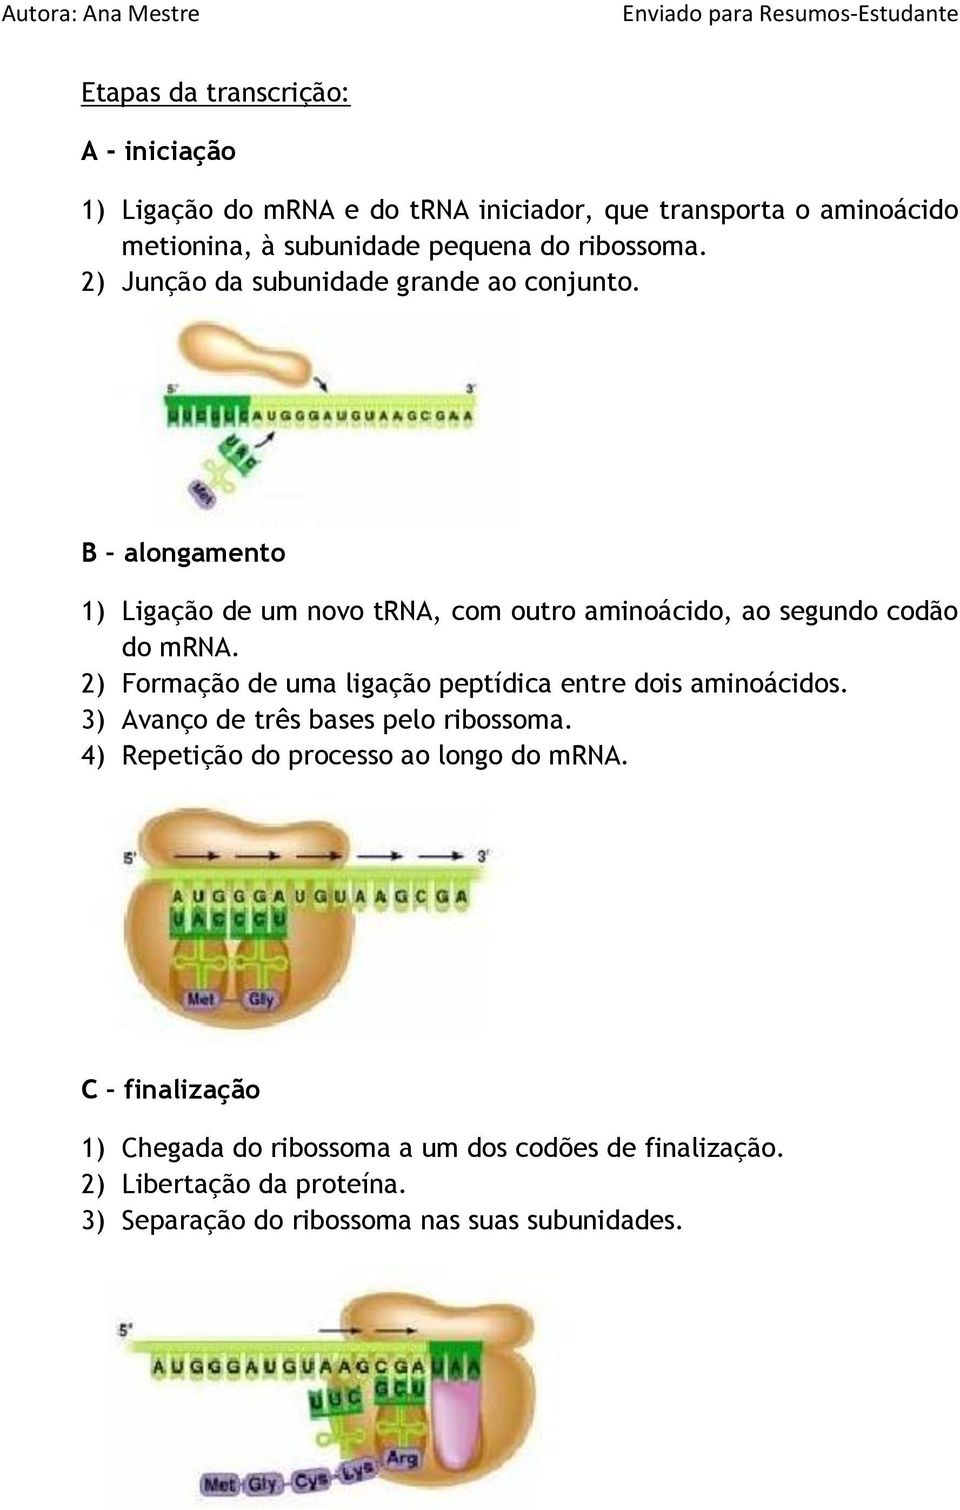 2) Formação de uma ligação peptídica entre dois aminoácidos. 3) Avanço de três bases pelo ribossoma. 4) Repetição do processo ao longo do mrna.